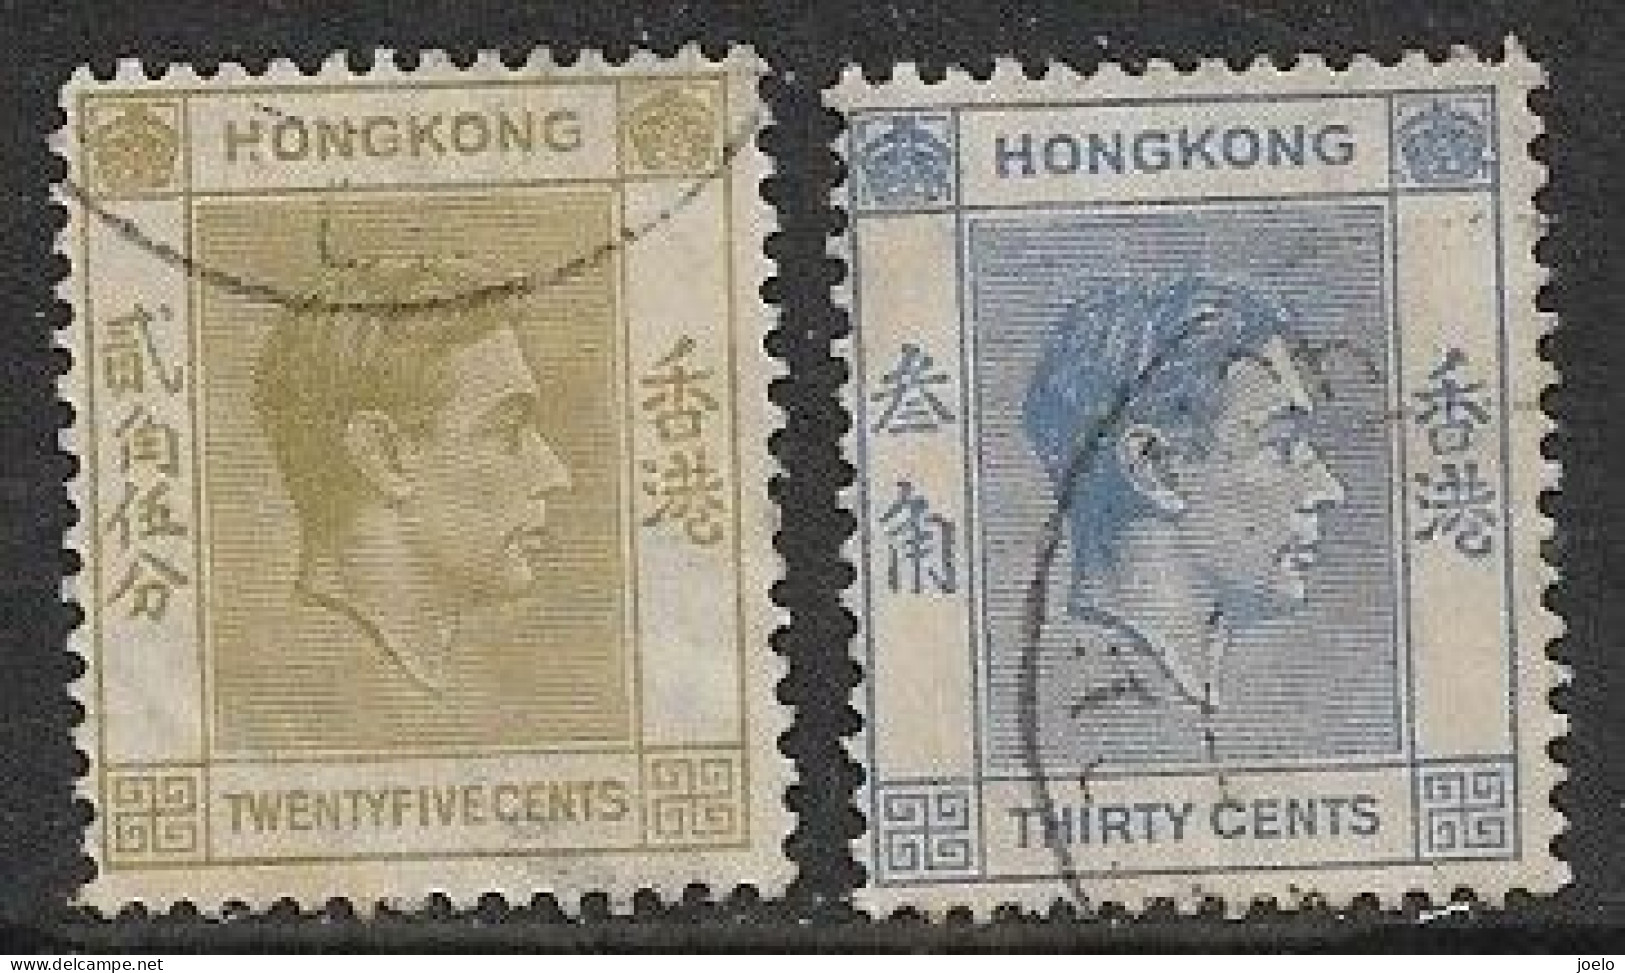 HONG KONG KGVl 1938 DEFINITIVES 25c OLIVE & 30c BLUE PAIR - Gebruikt